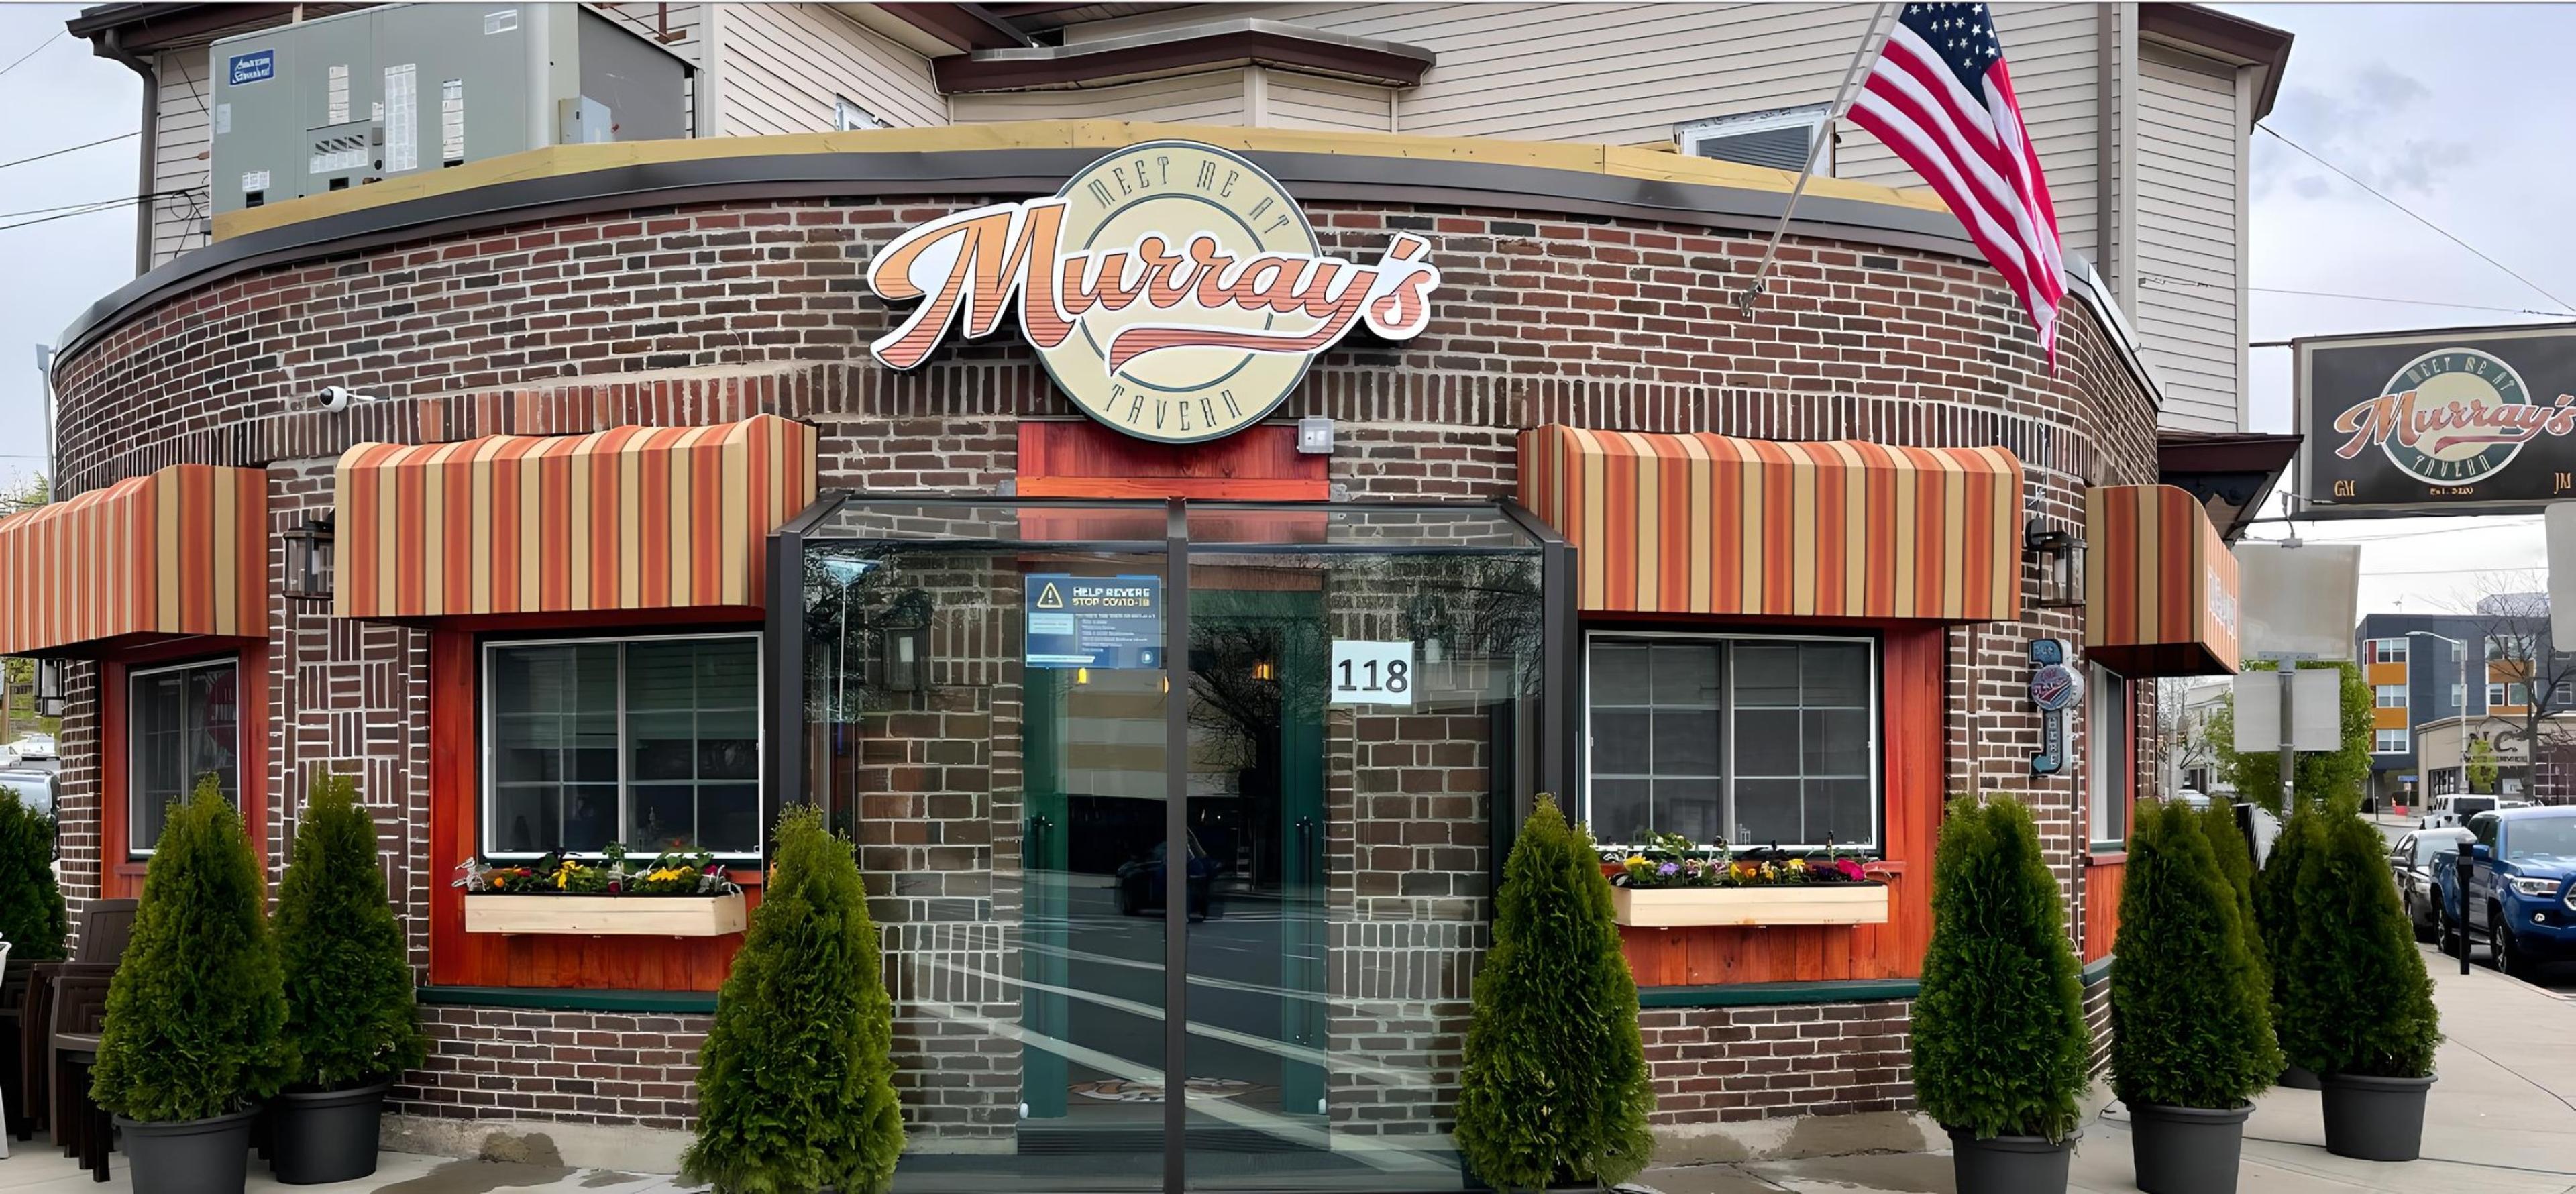 Murray's Tavern